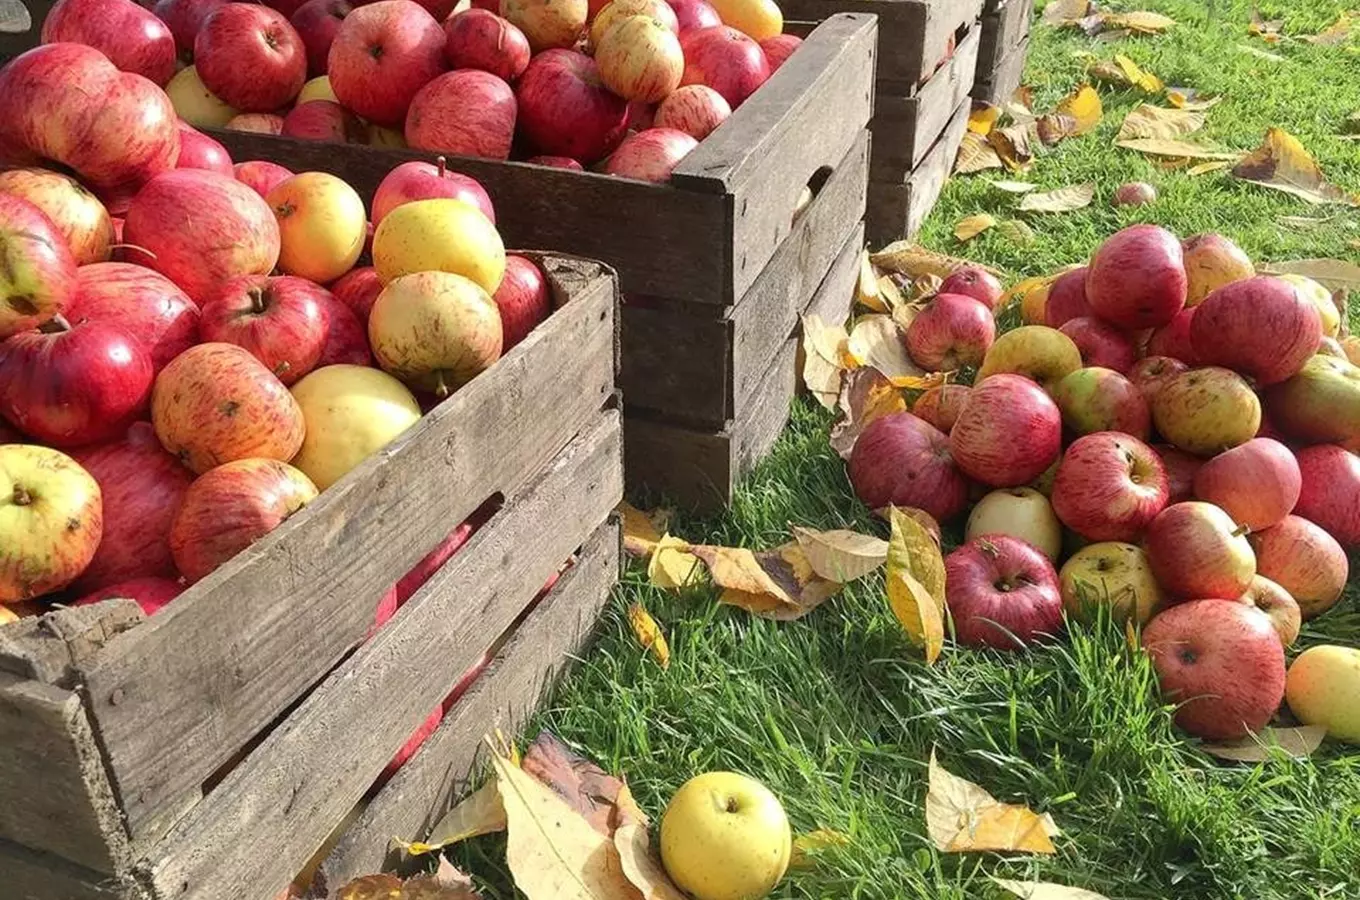 Pardubická moštárna Zdrcený jablko – čerstvé mošty a další jablečné výrobky